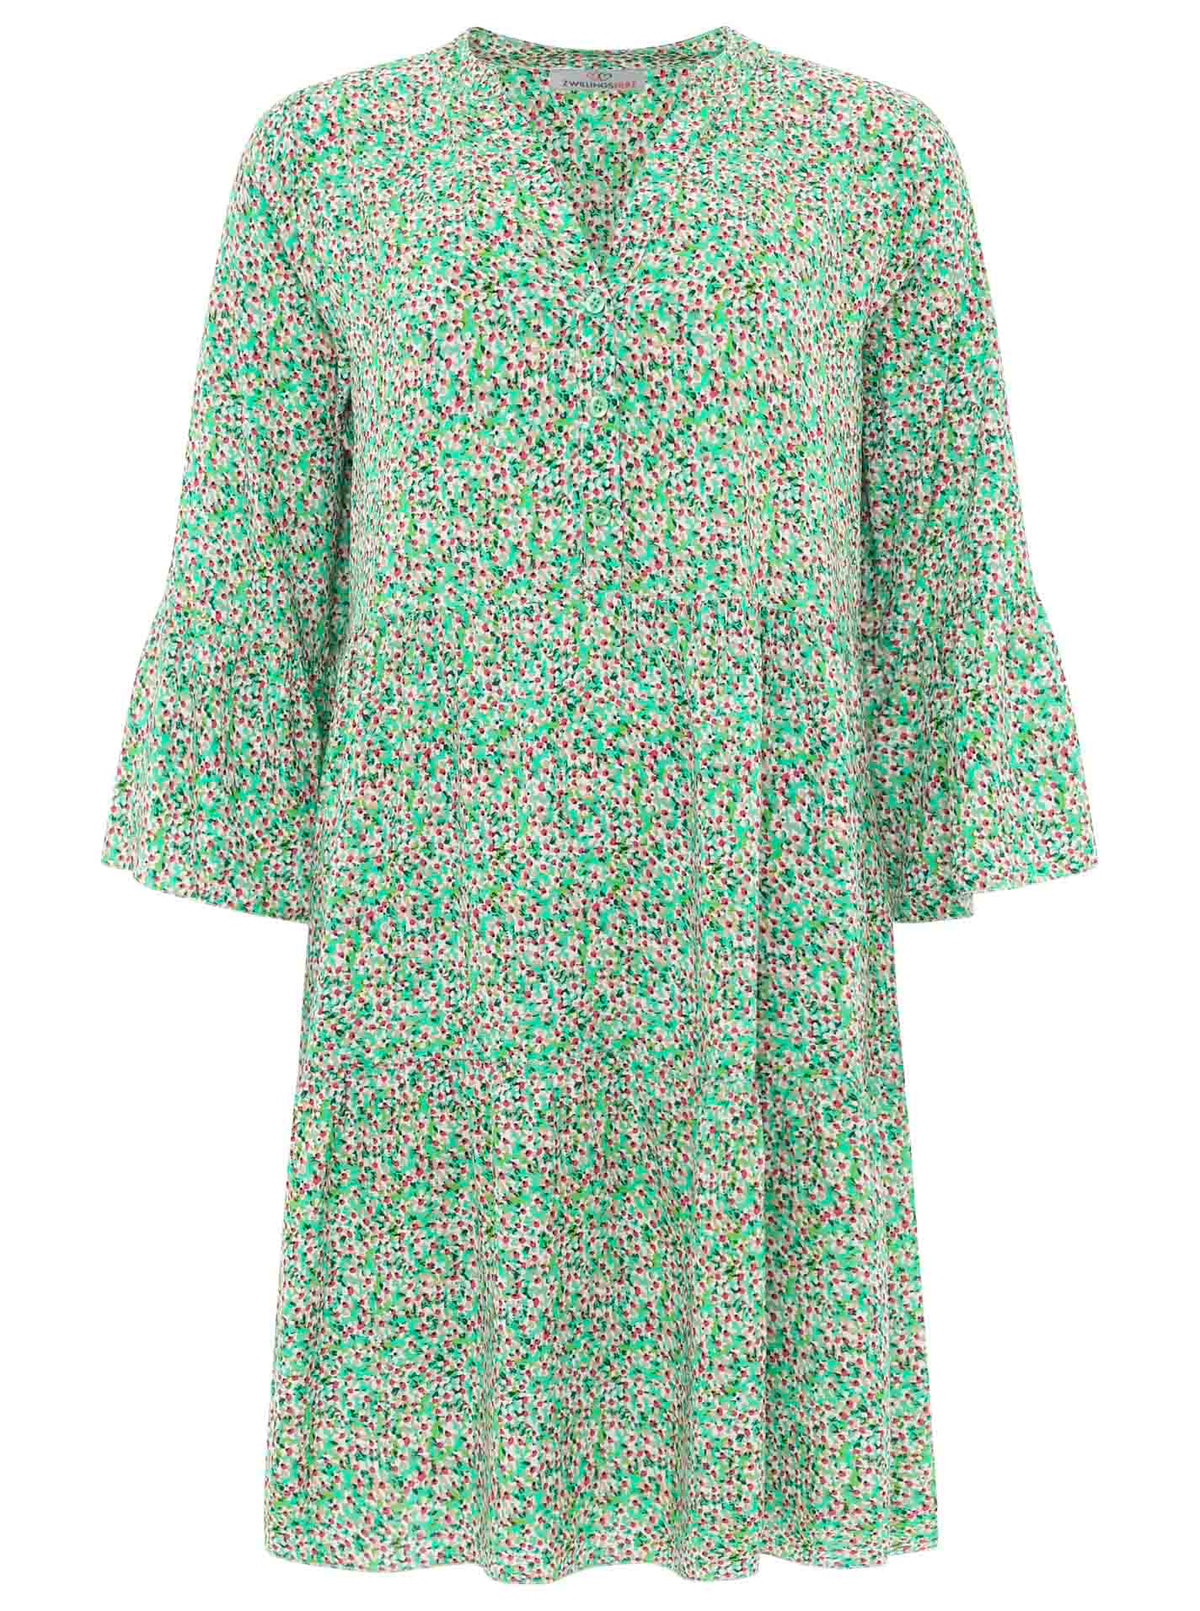 Zwillingsherz - Kleid/Tunika mit kleinen Blütenmuster - Grün